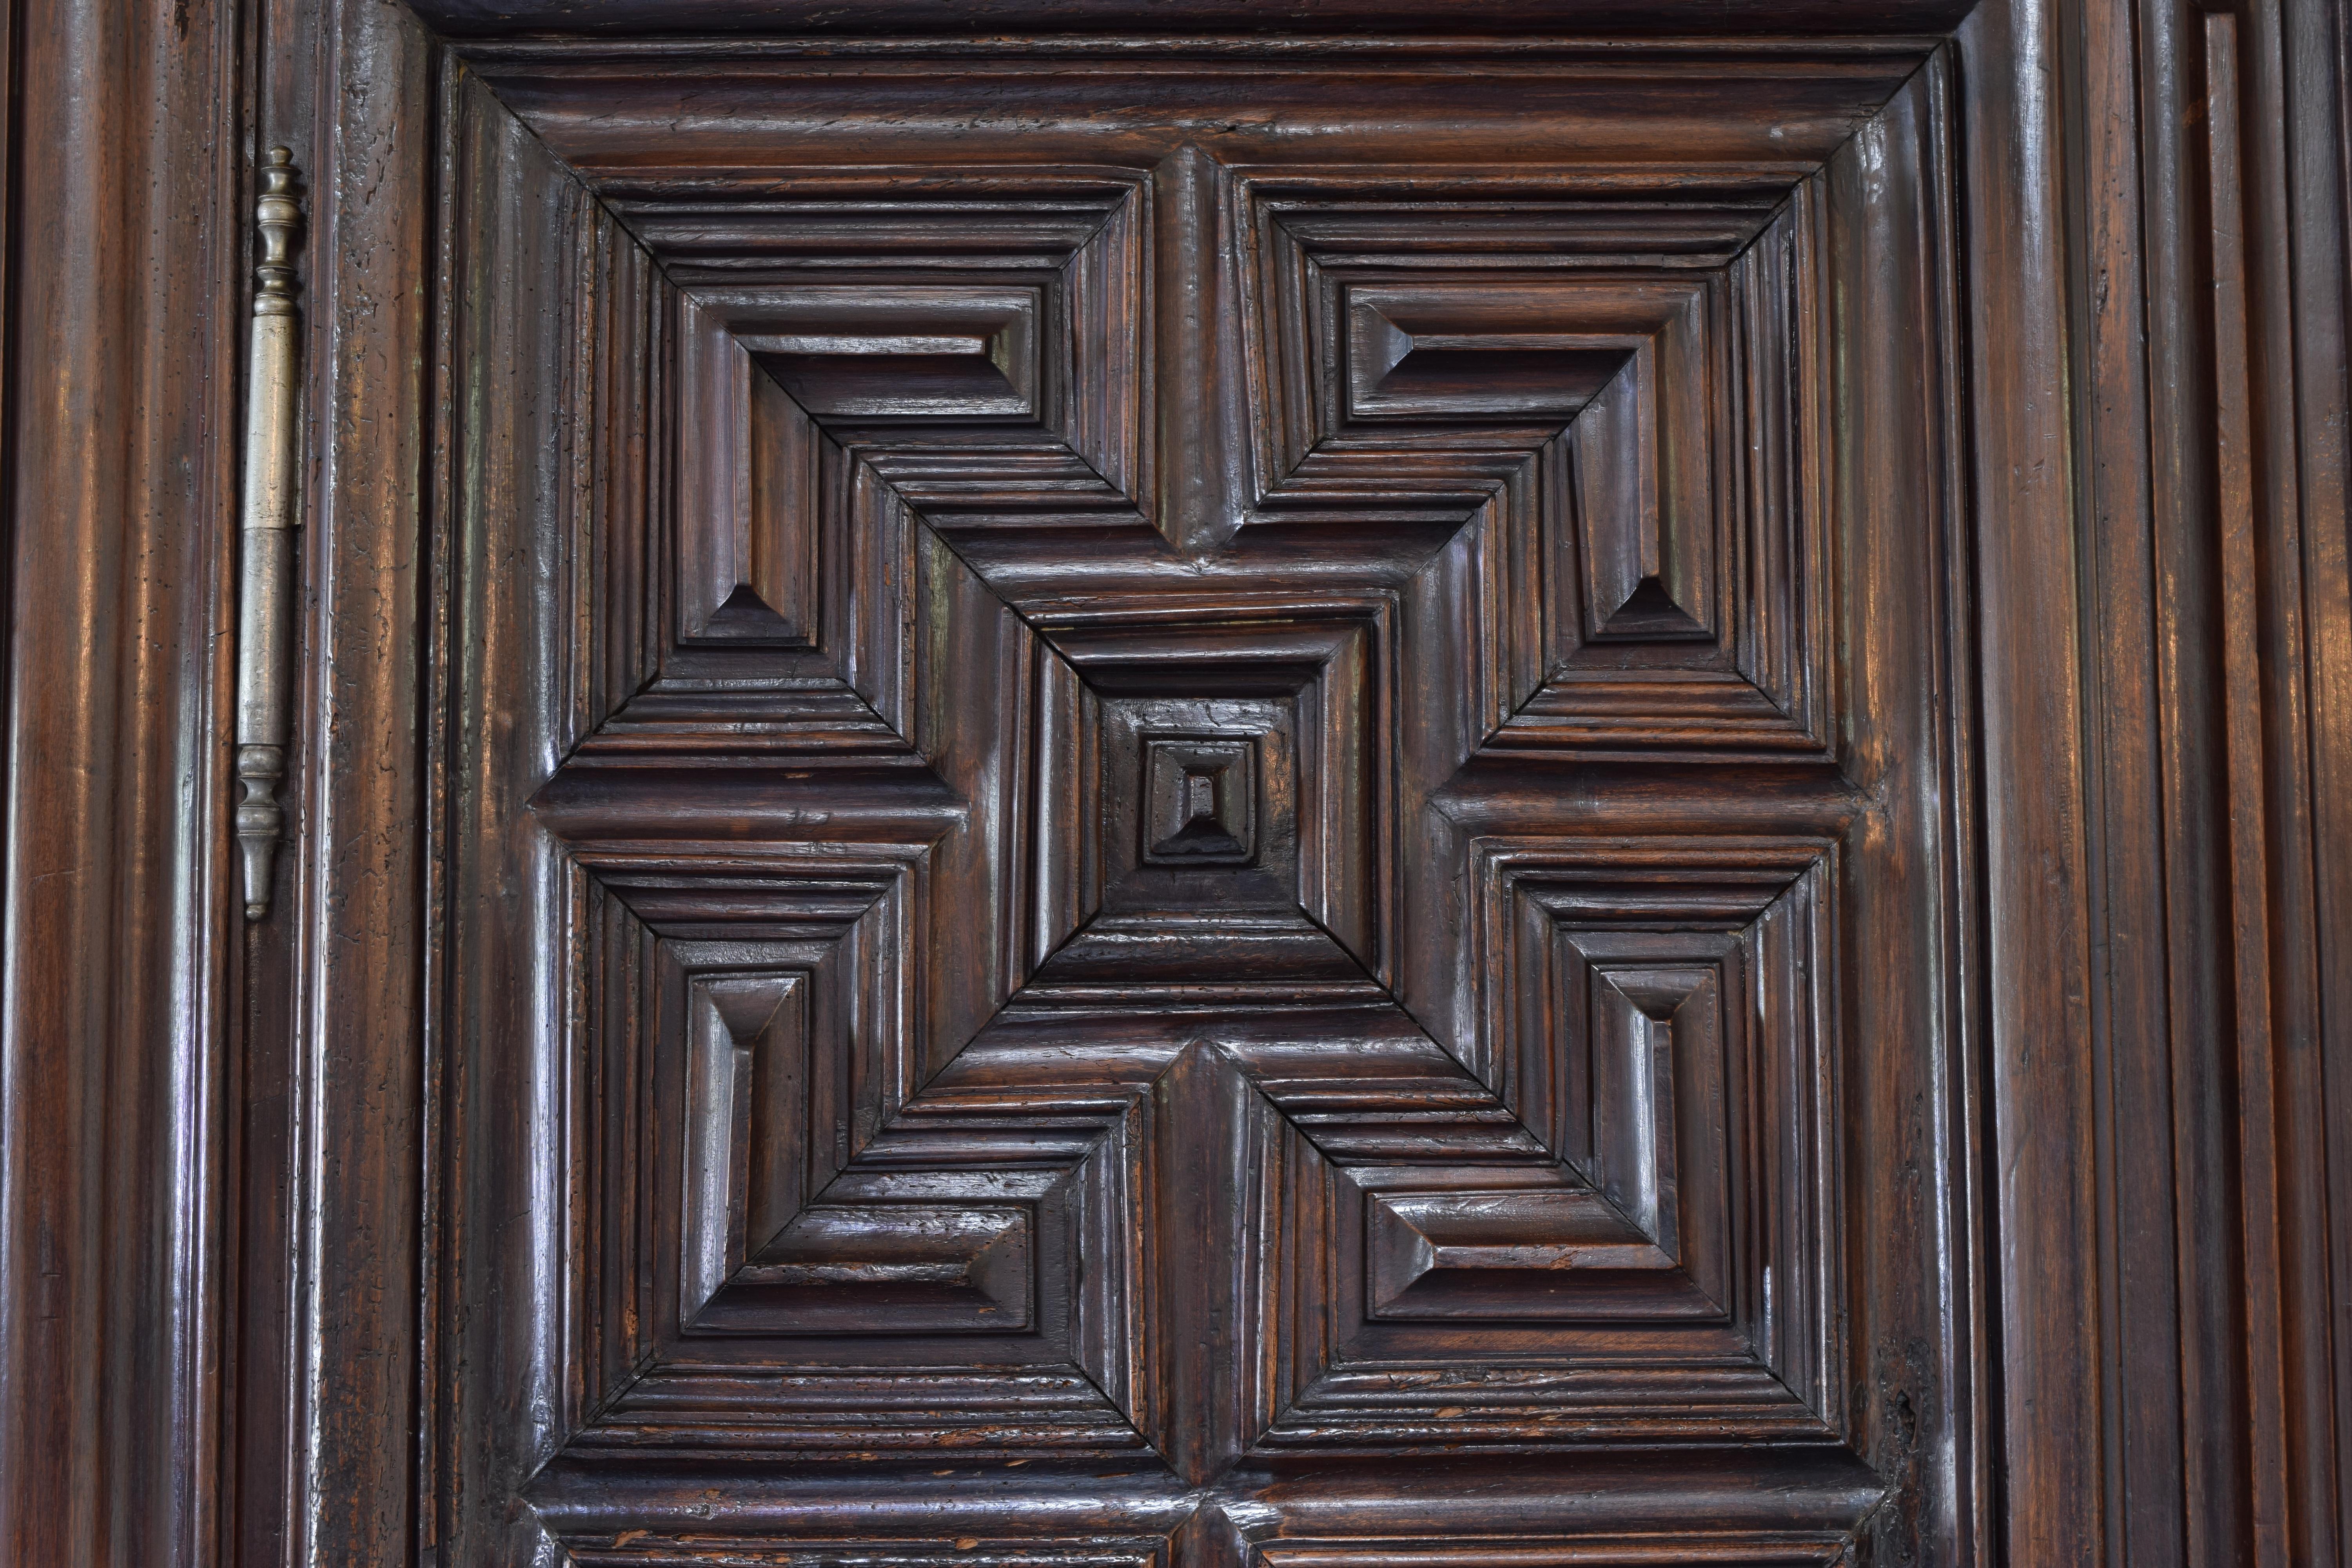 Spanish Louis XIV Period Carved Walnut 2-Door, 1 Door Armadio, 1stq 18th cen. 4